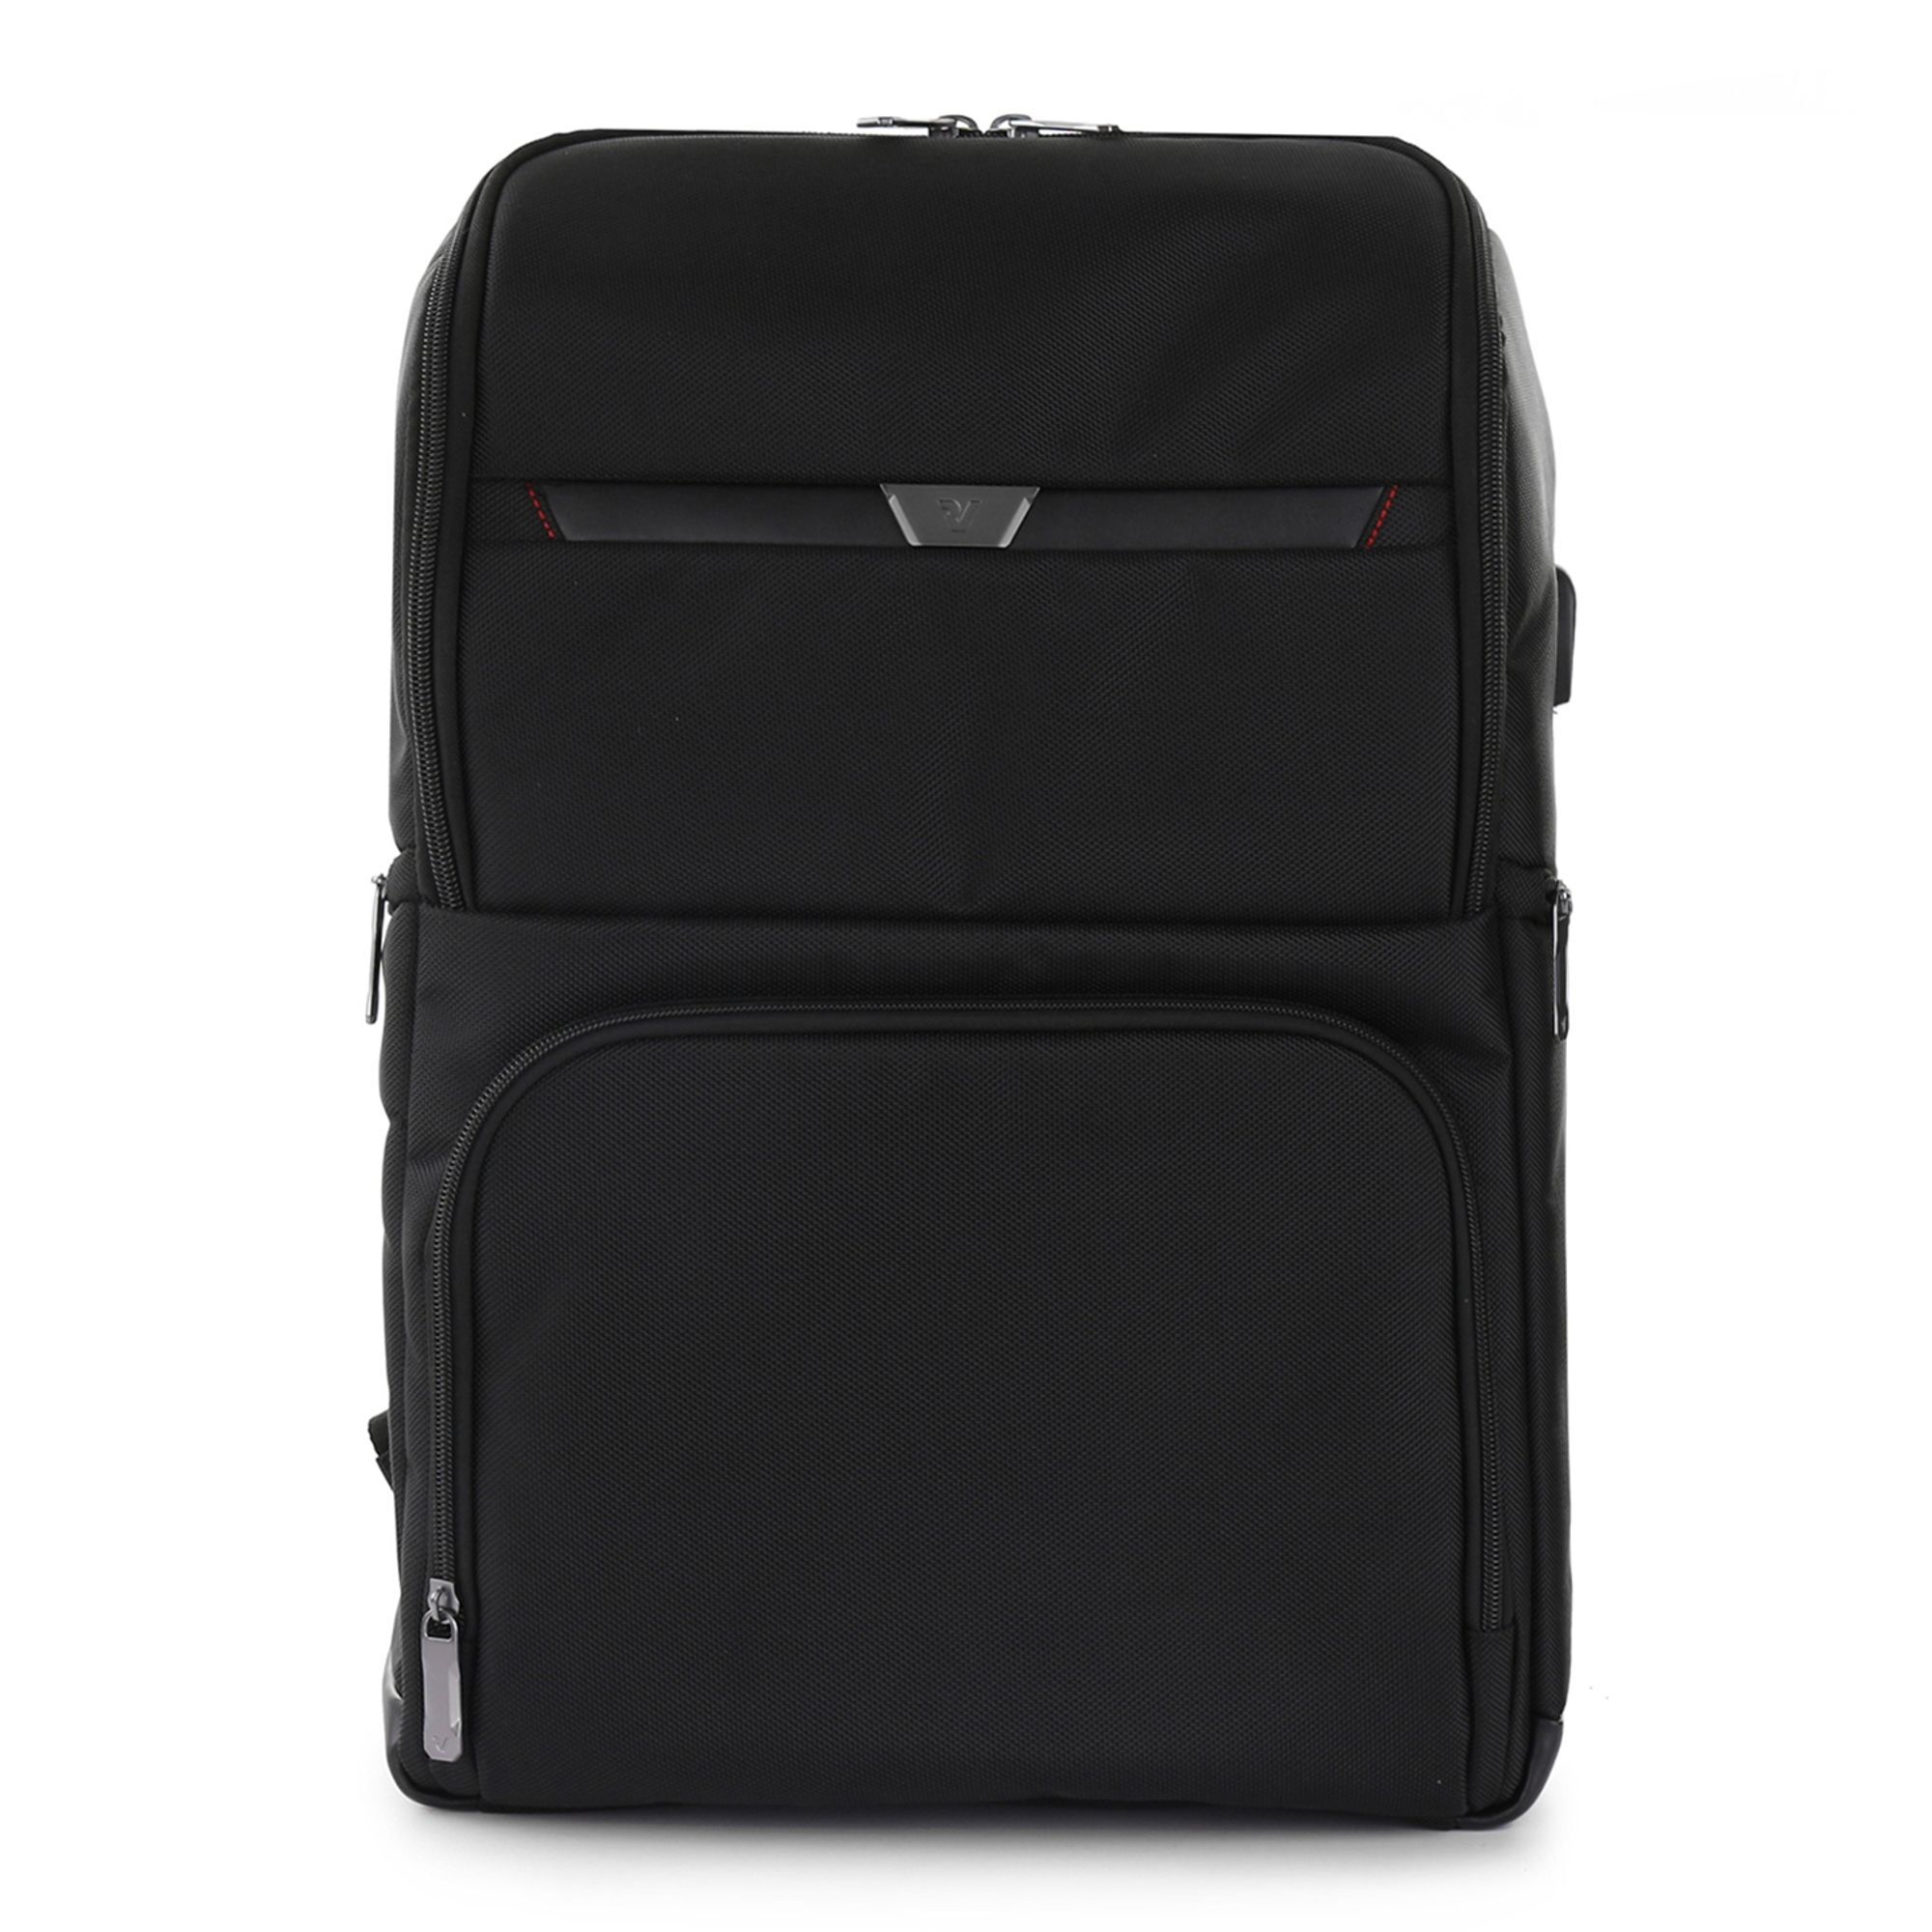 Рюкзак Roncato Biz 4.0 43 cm Laptopfach, черный